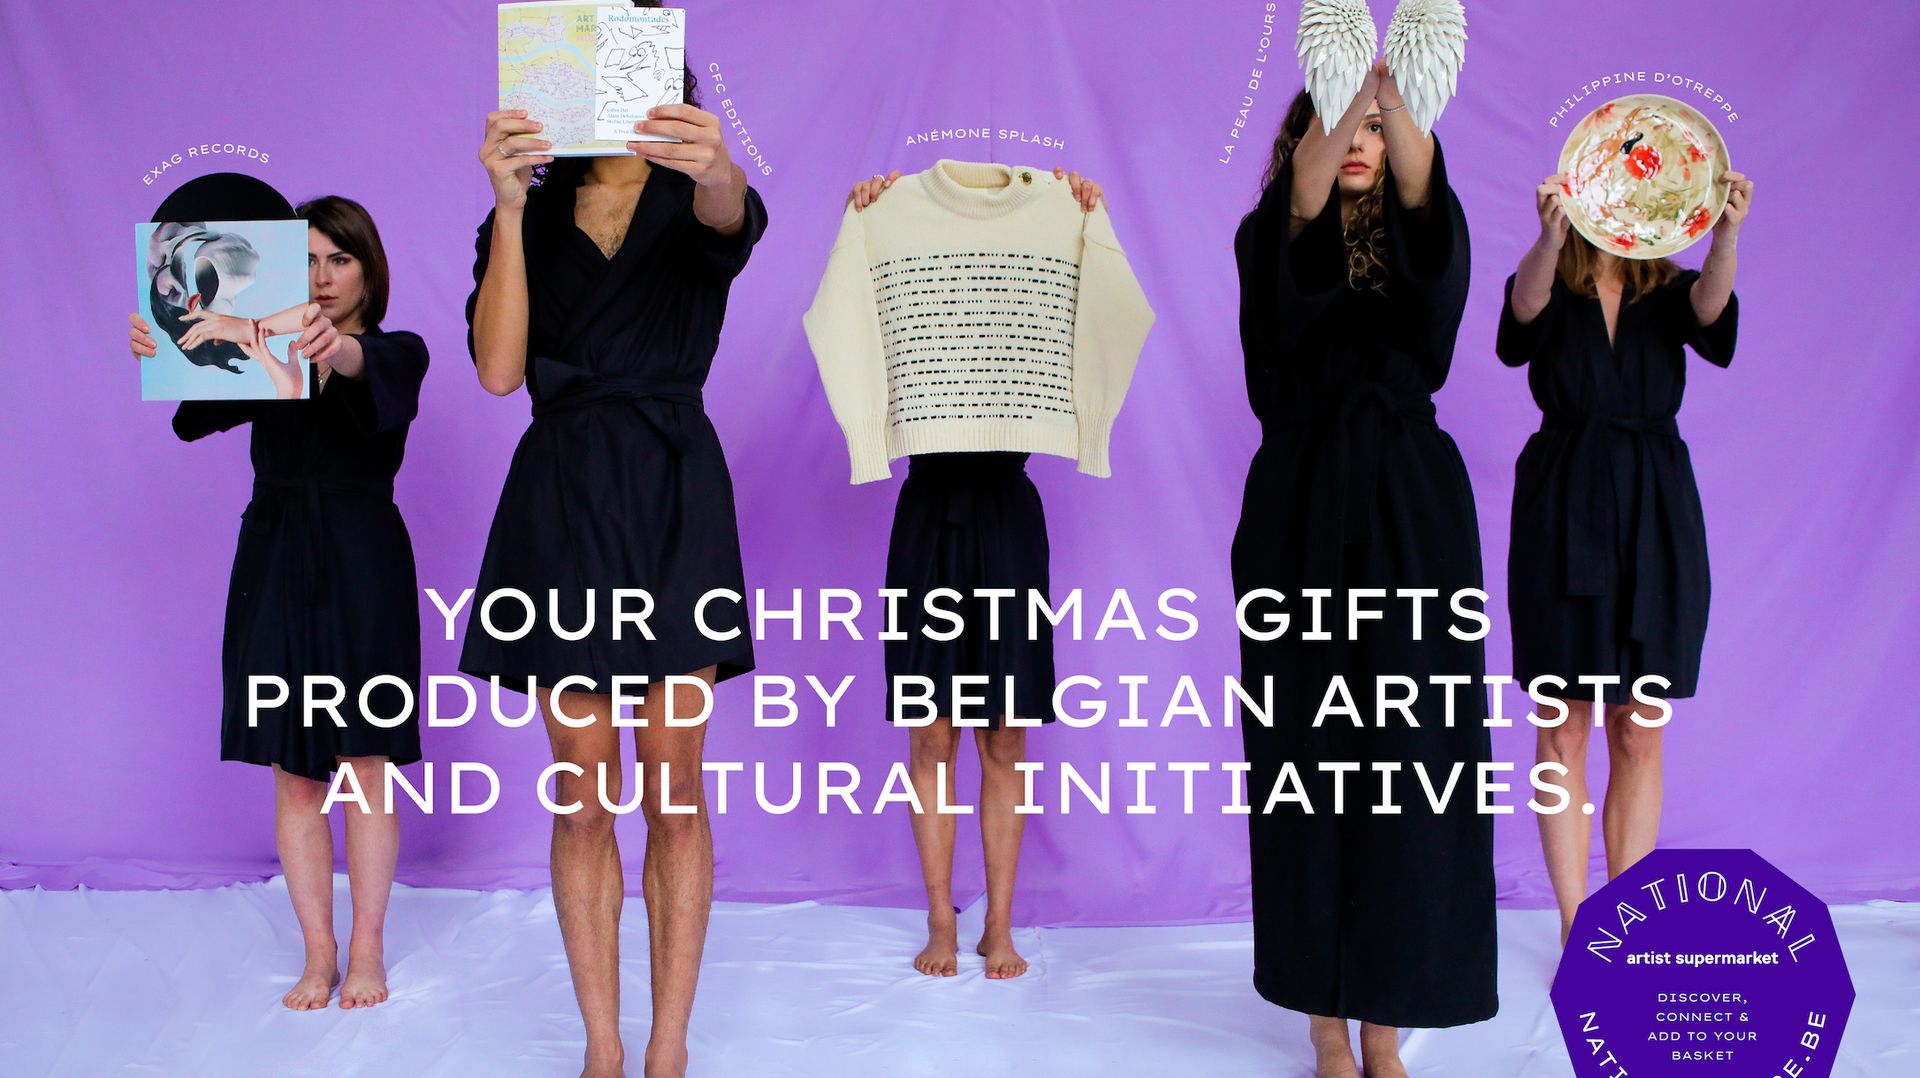 Pour les fêtes, optez pour des cadeaux d'artistes belges!